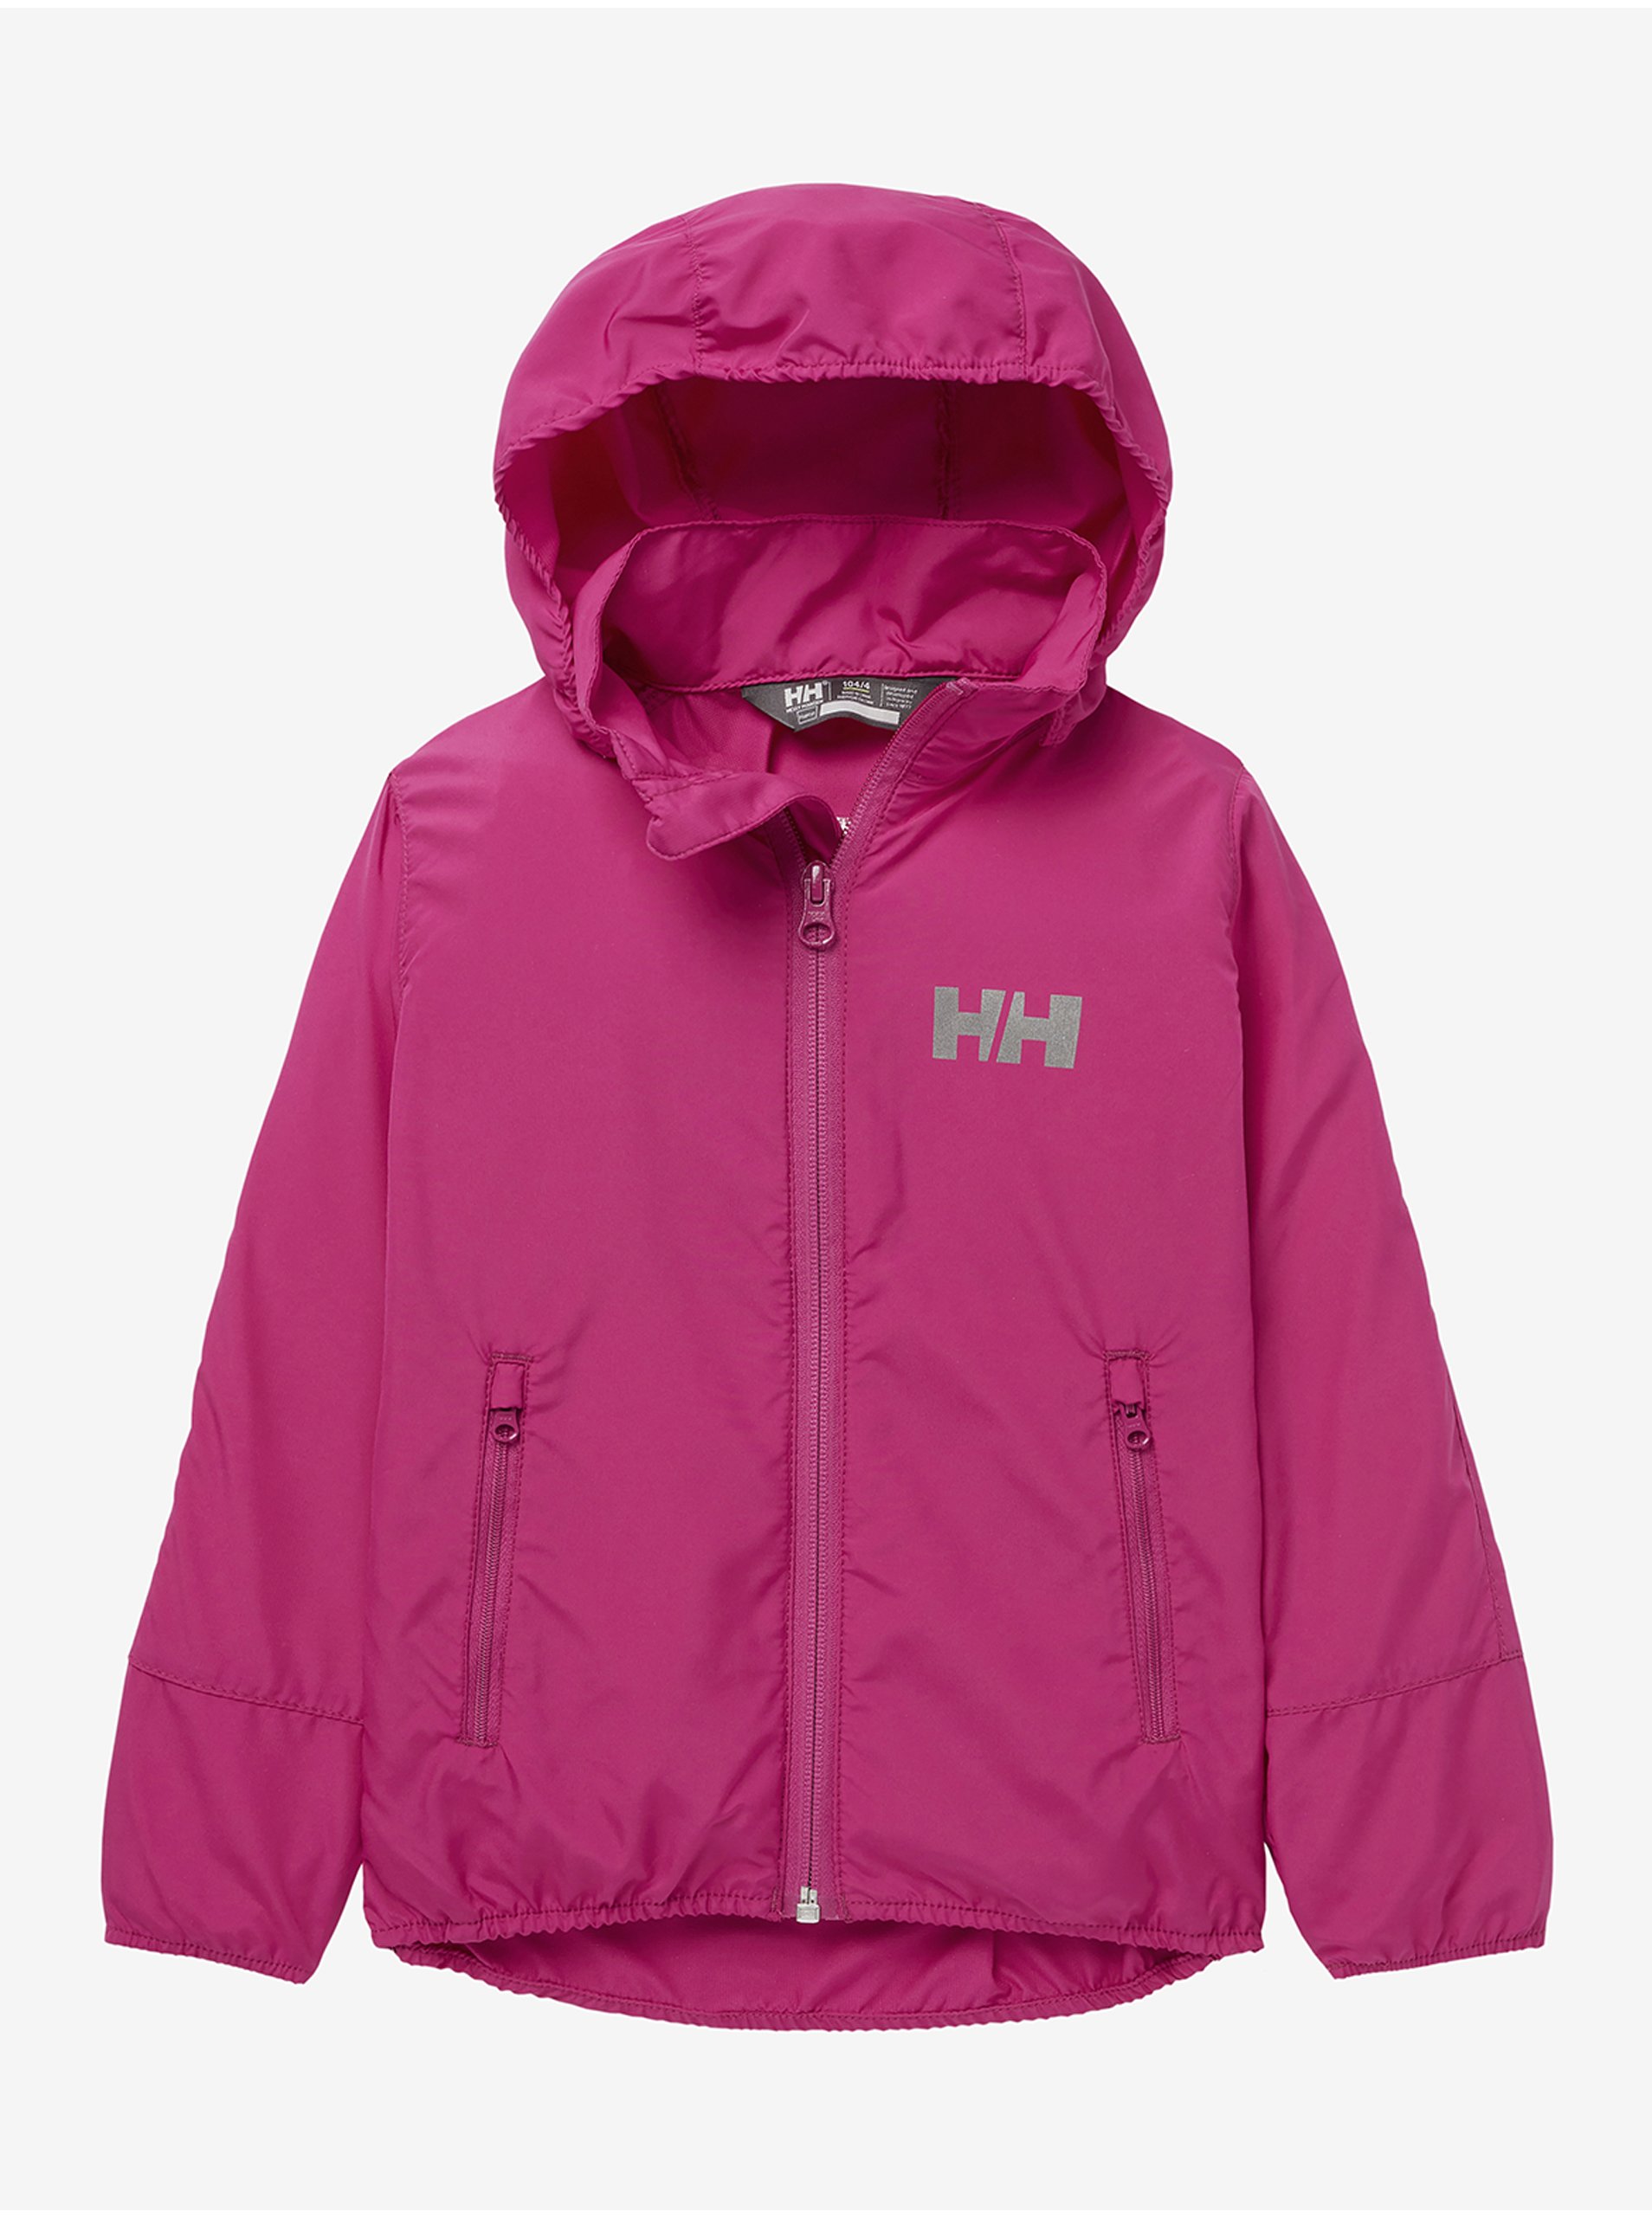 E-shop Tmavě růžová holčičí lehká bunda HELLY HANSEN